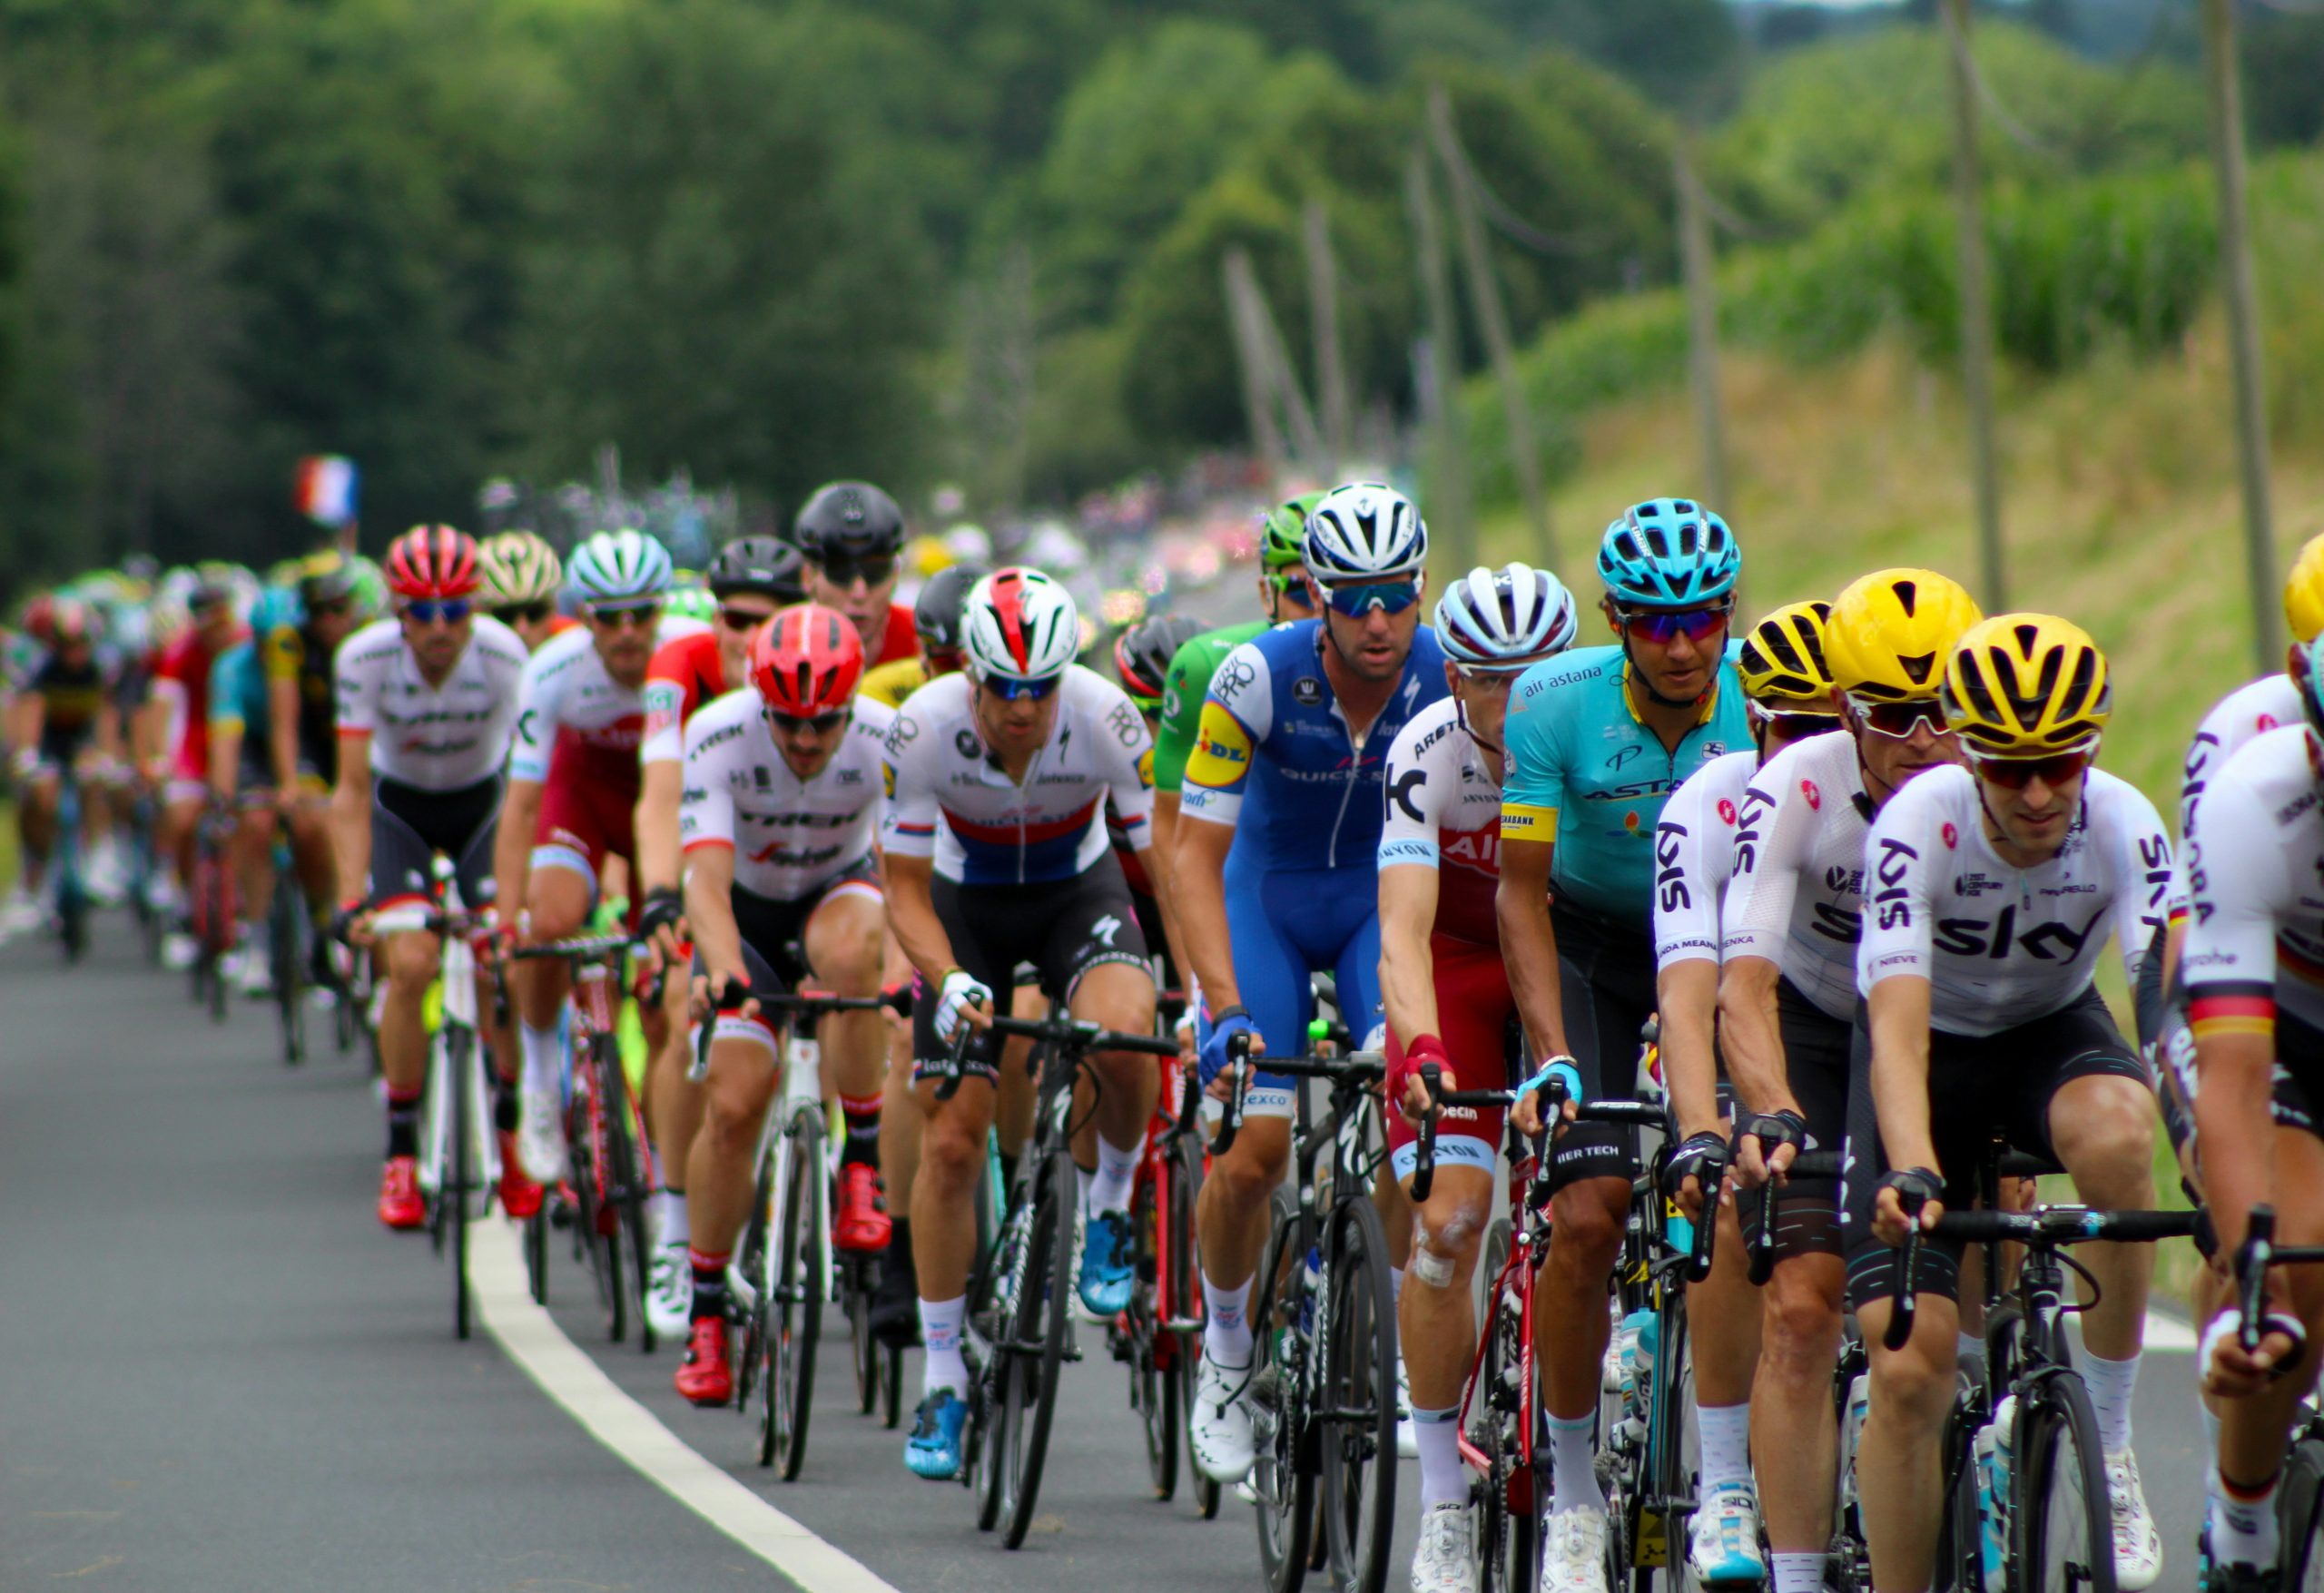 Tips for Enjoying the Tour de France Online